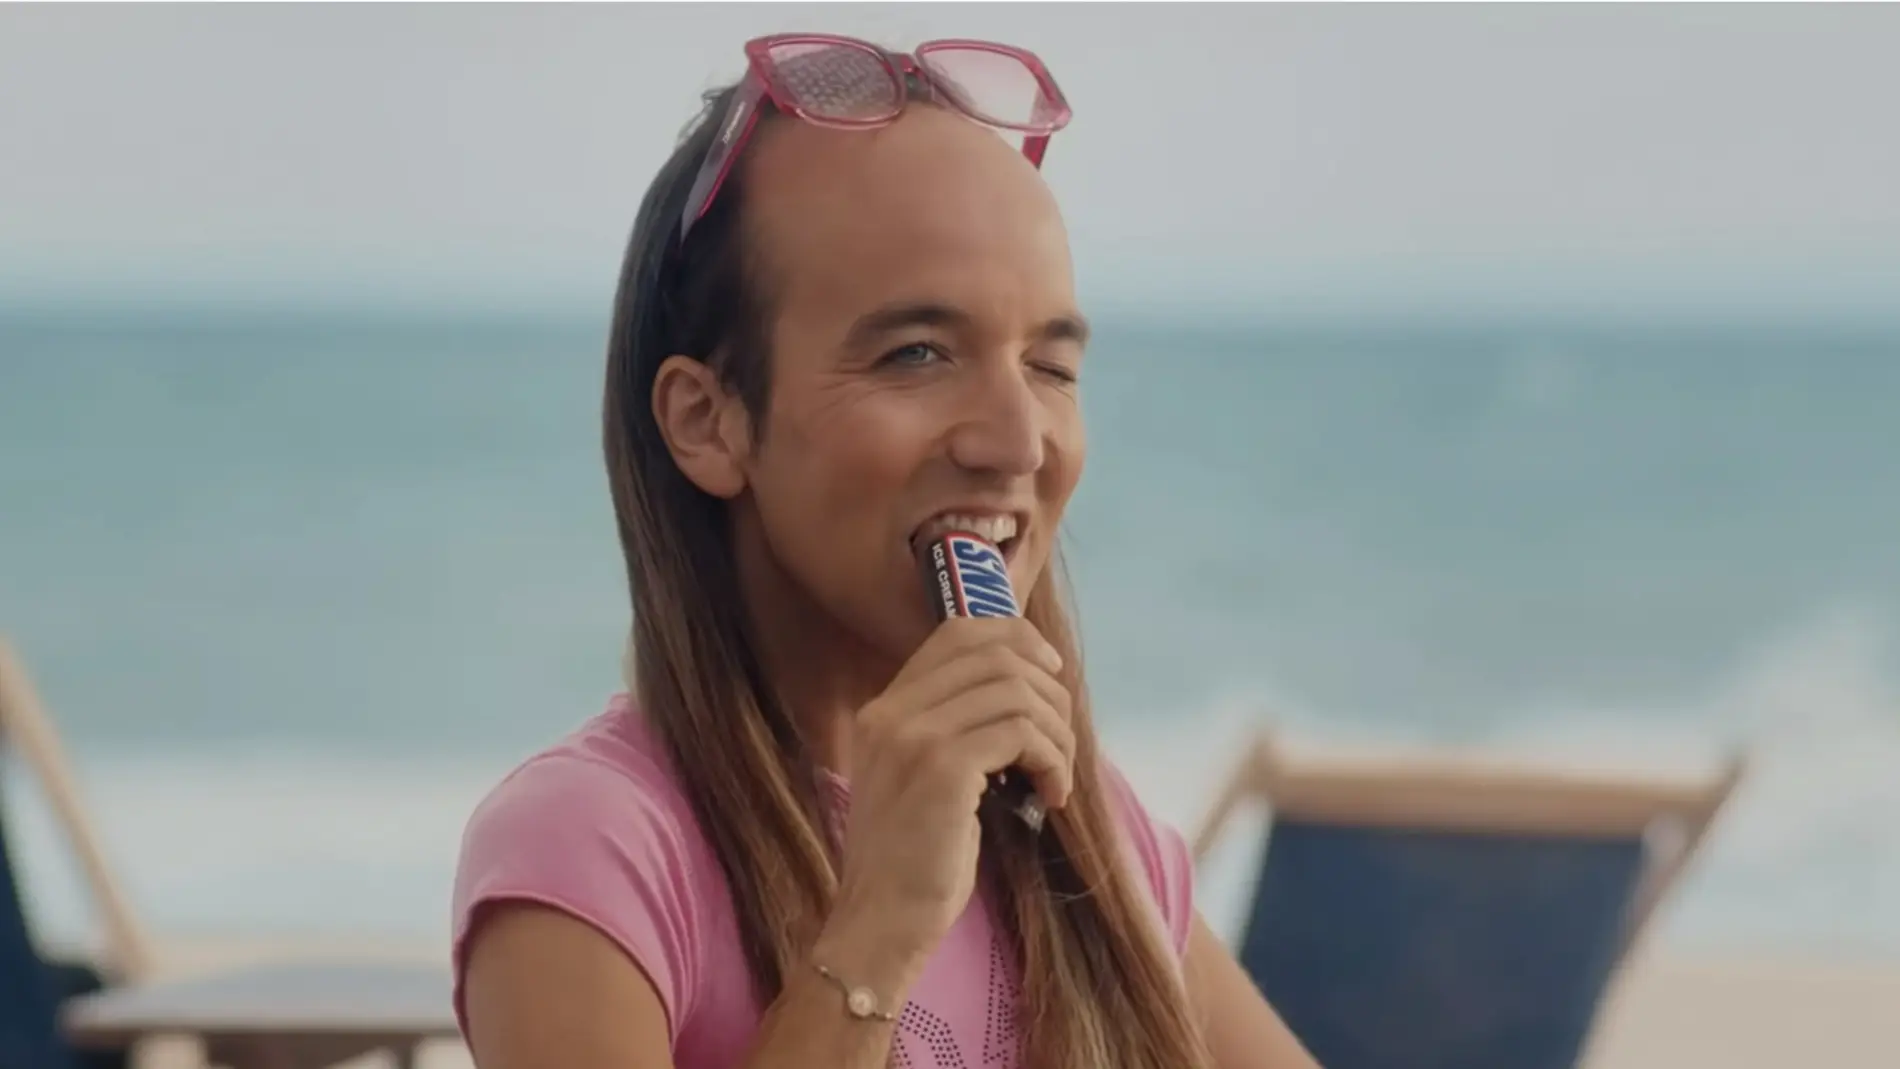 El último anuncio de Snickers recibe una oleada de críticas por "homofobia" y "plumofobia"